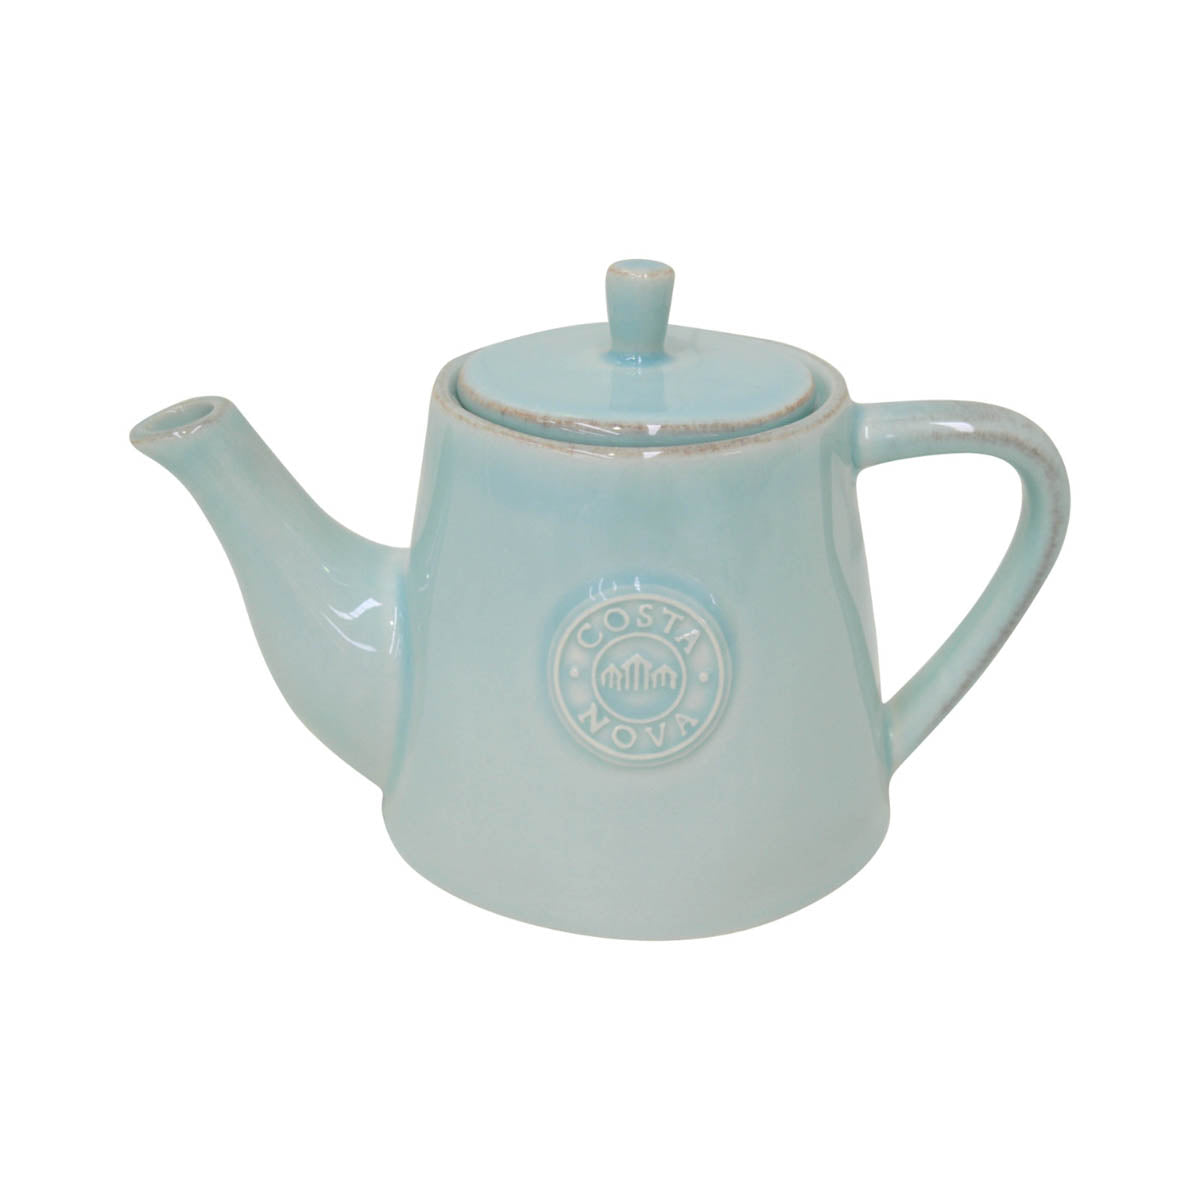 201290 Costa Nova Nova Turquoise Teapot 510ml  Tomkin Australia Hospitality Supplies